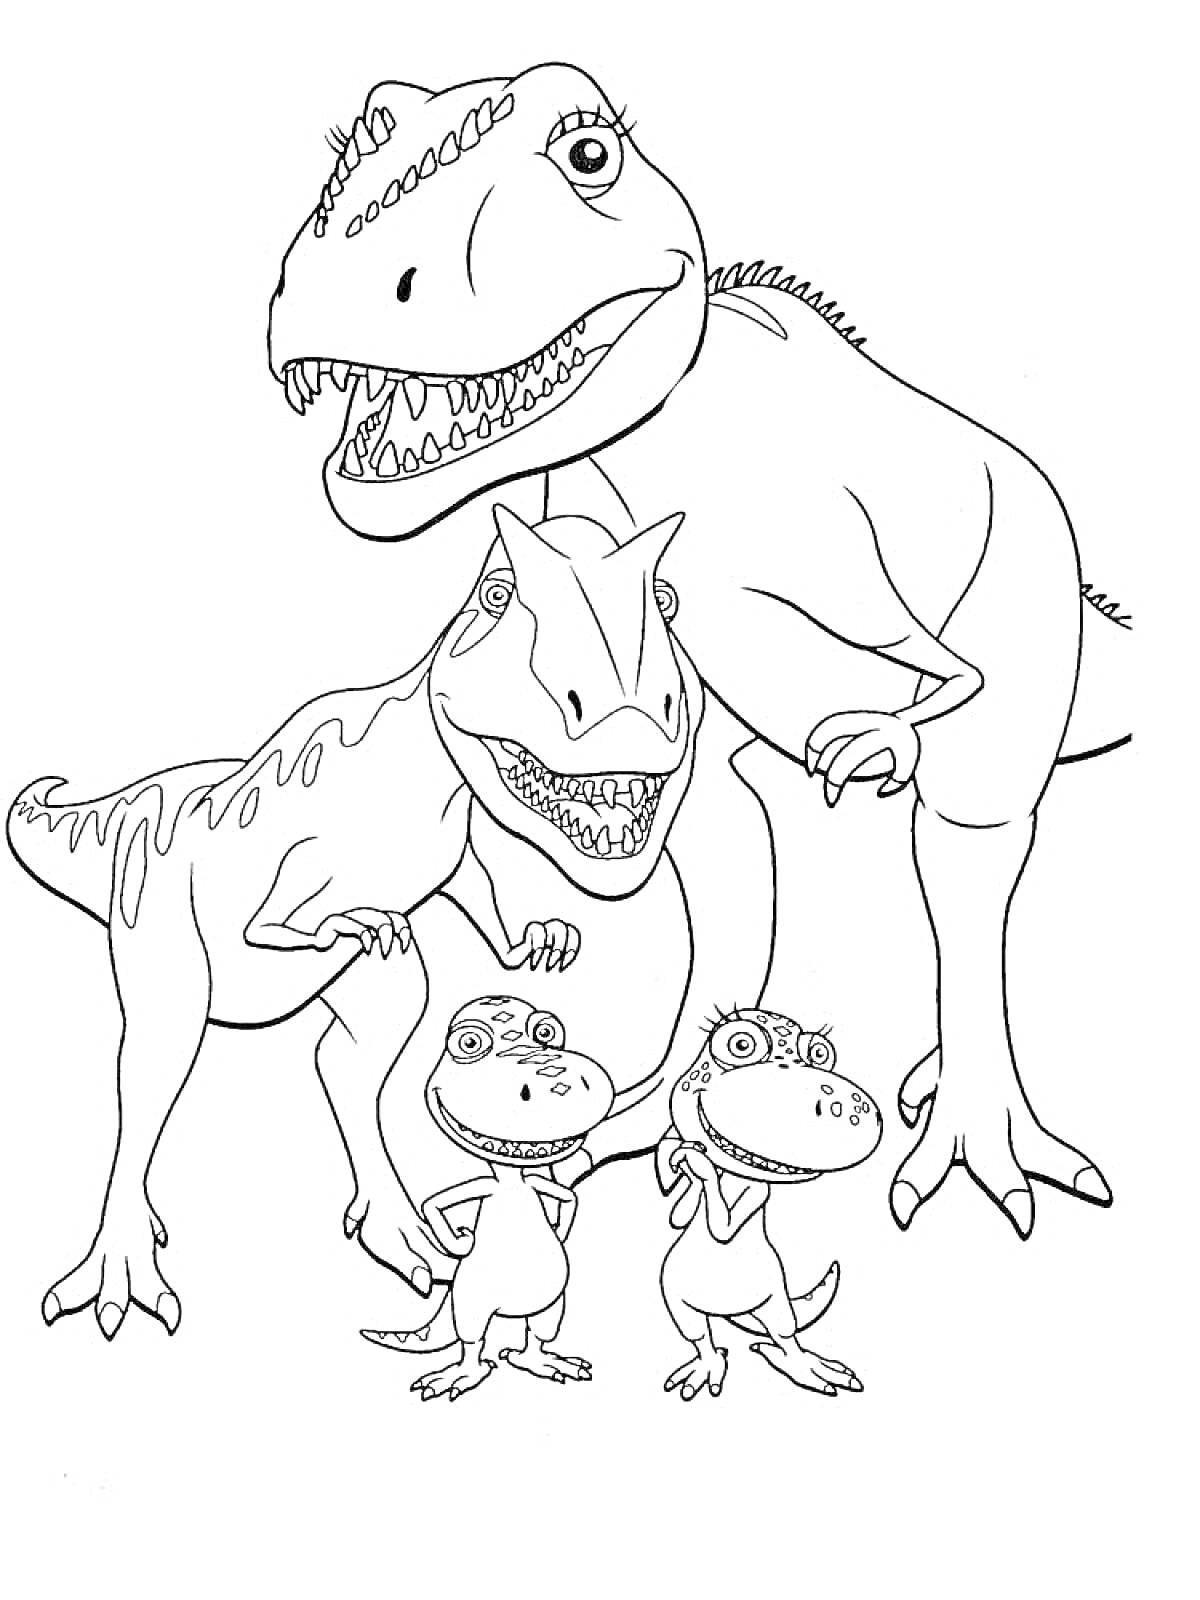 Динозавры - большая взрослая особь с двумя детёнышами